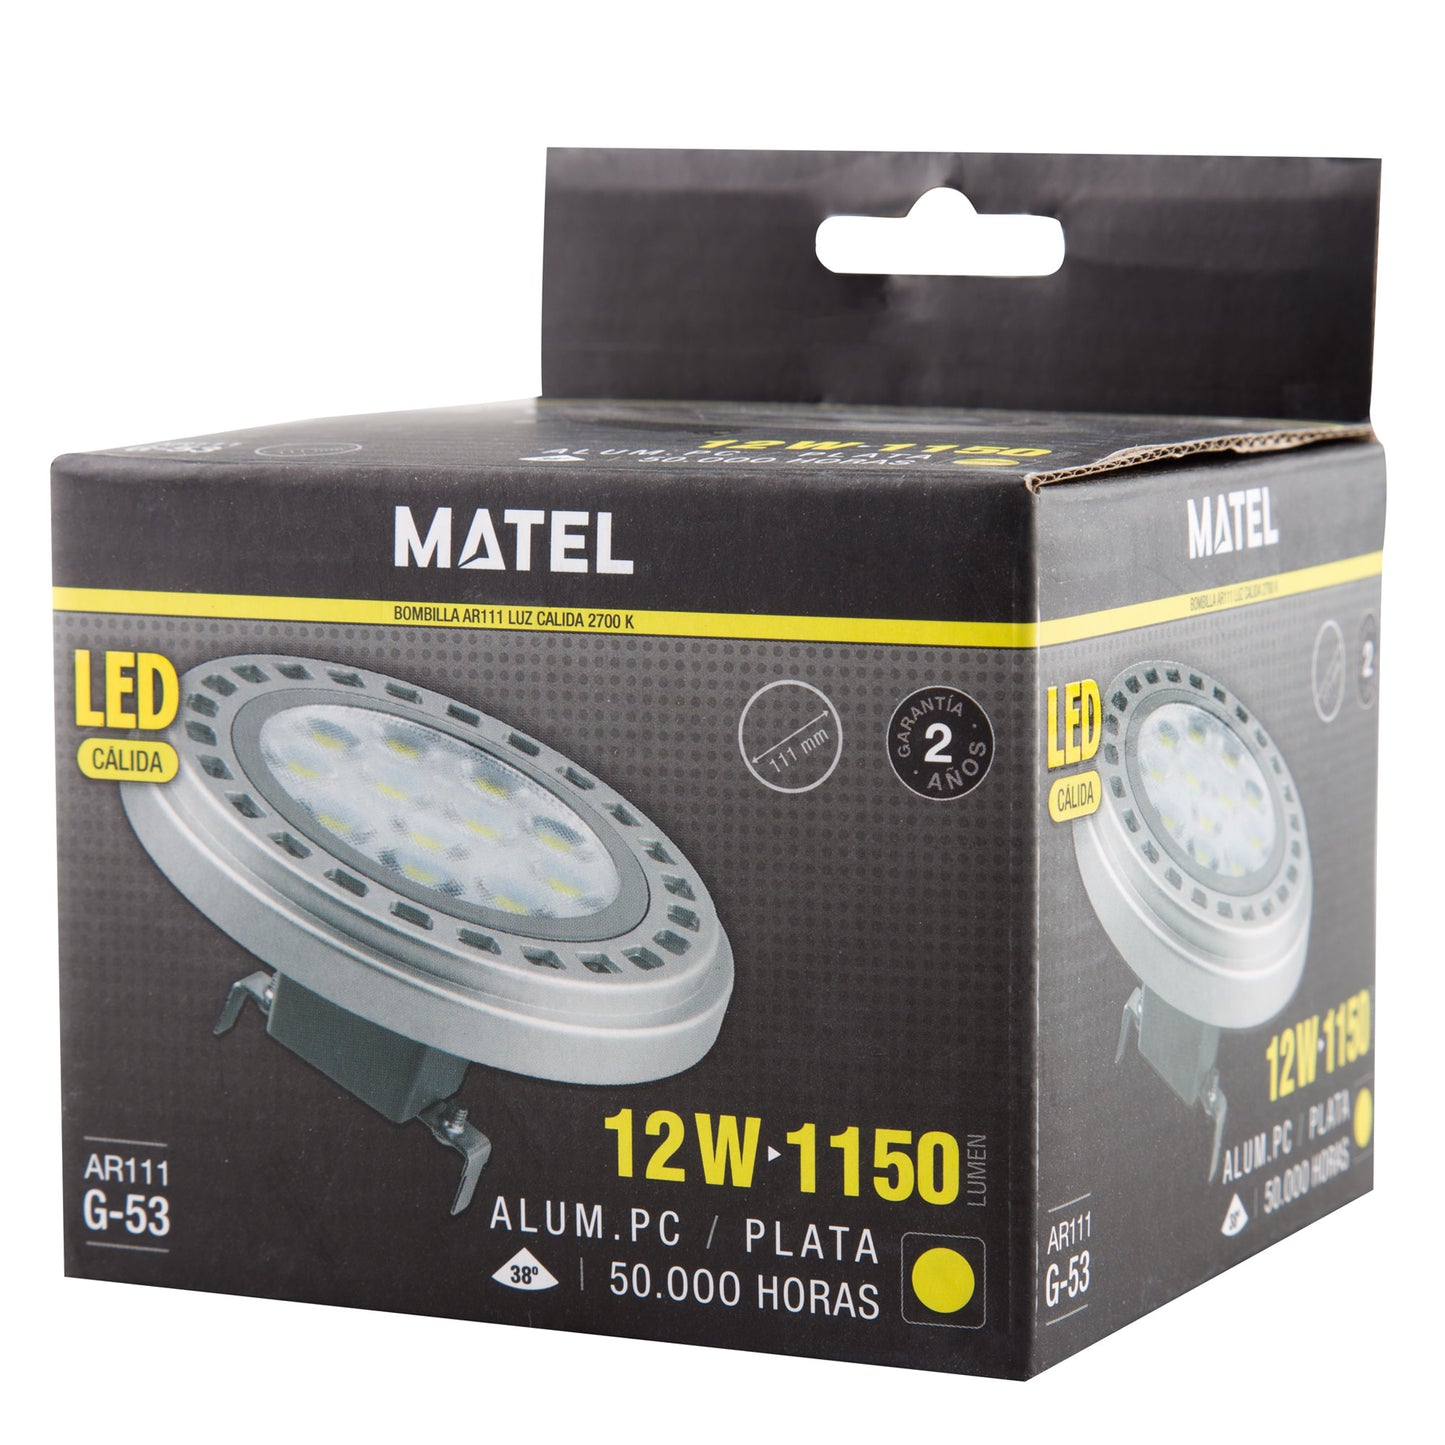 LED LAMP AR111 38º ES111 GU10 38º 120º GX53 120º 230V AC 